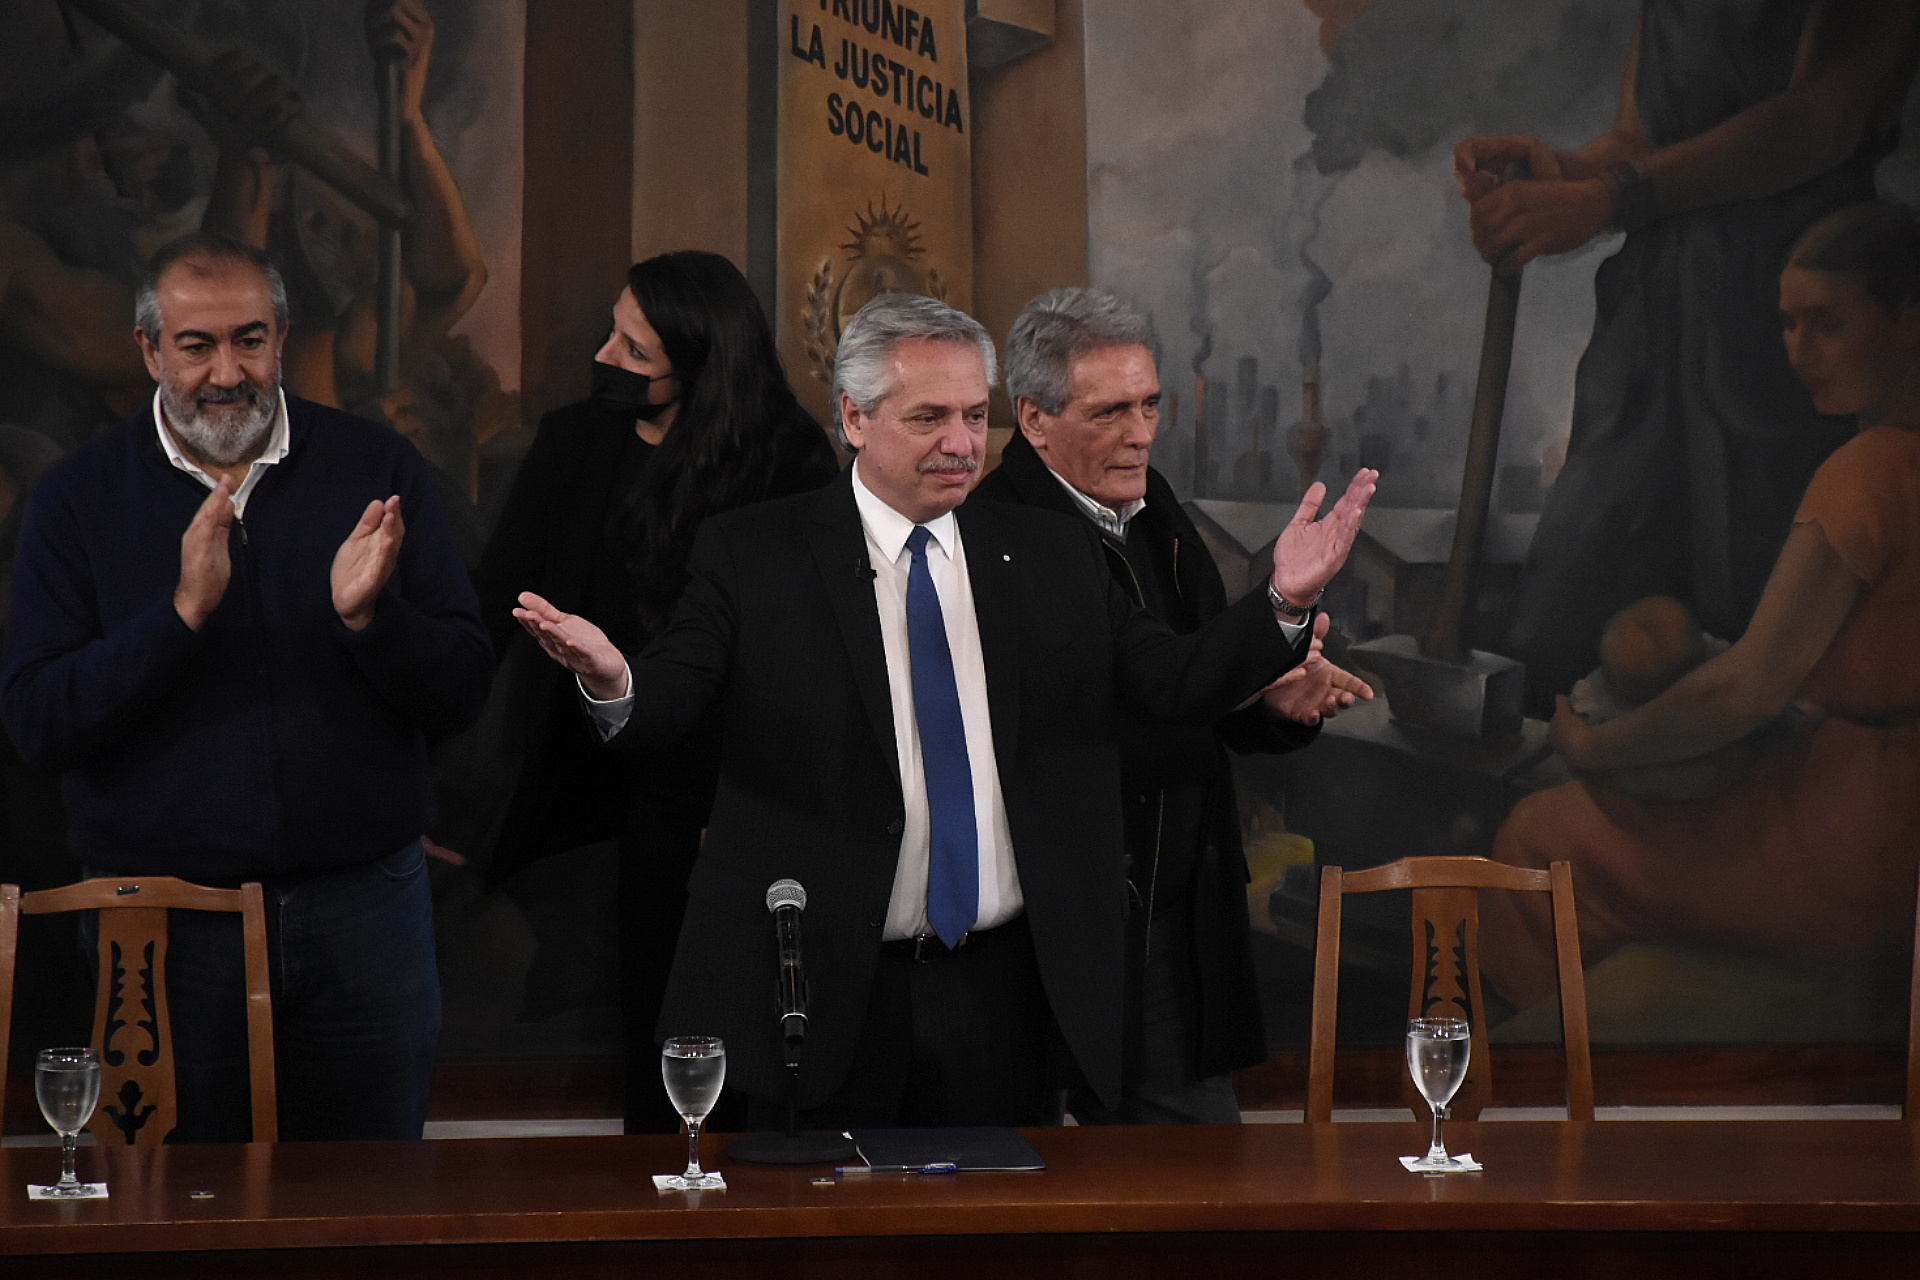 Alberto Fernández calentó la previa del discurso de Cristina Kirchner, envalentonado por la primera plana del peronismo en la CGT